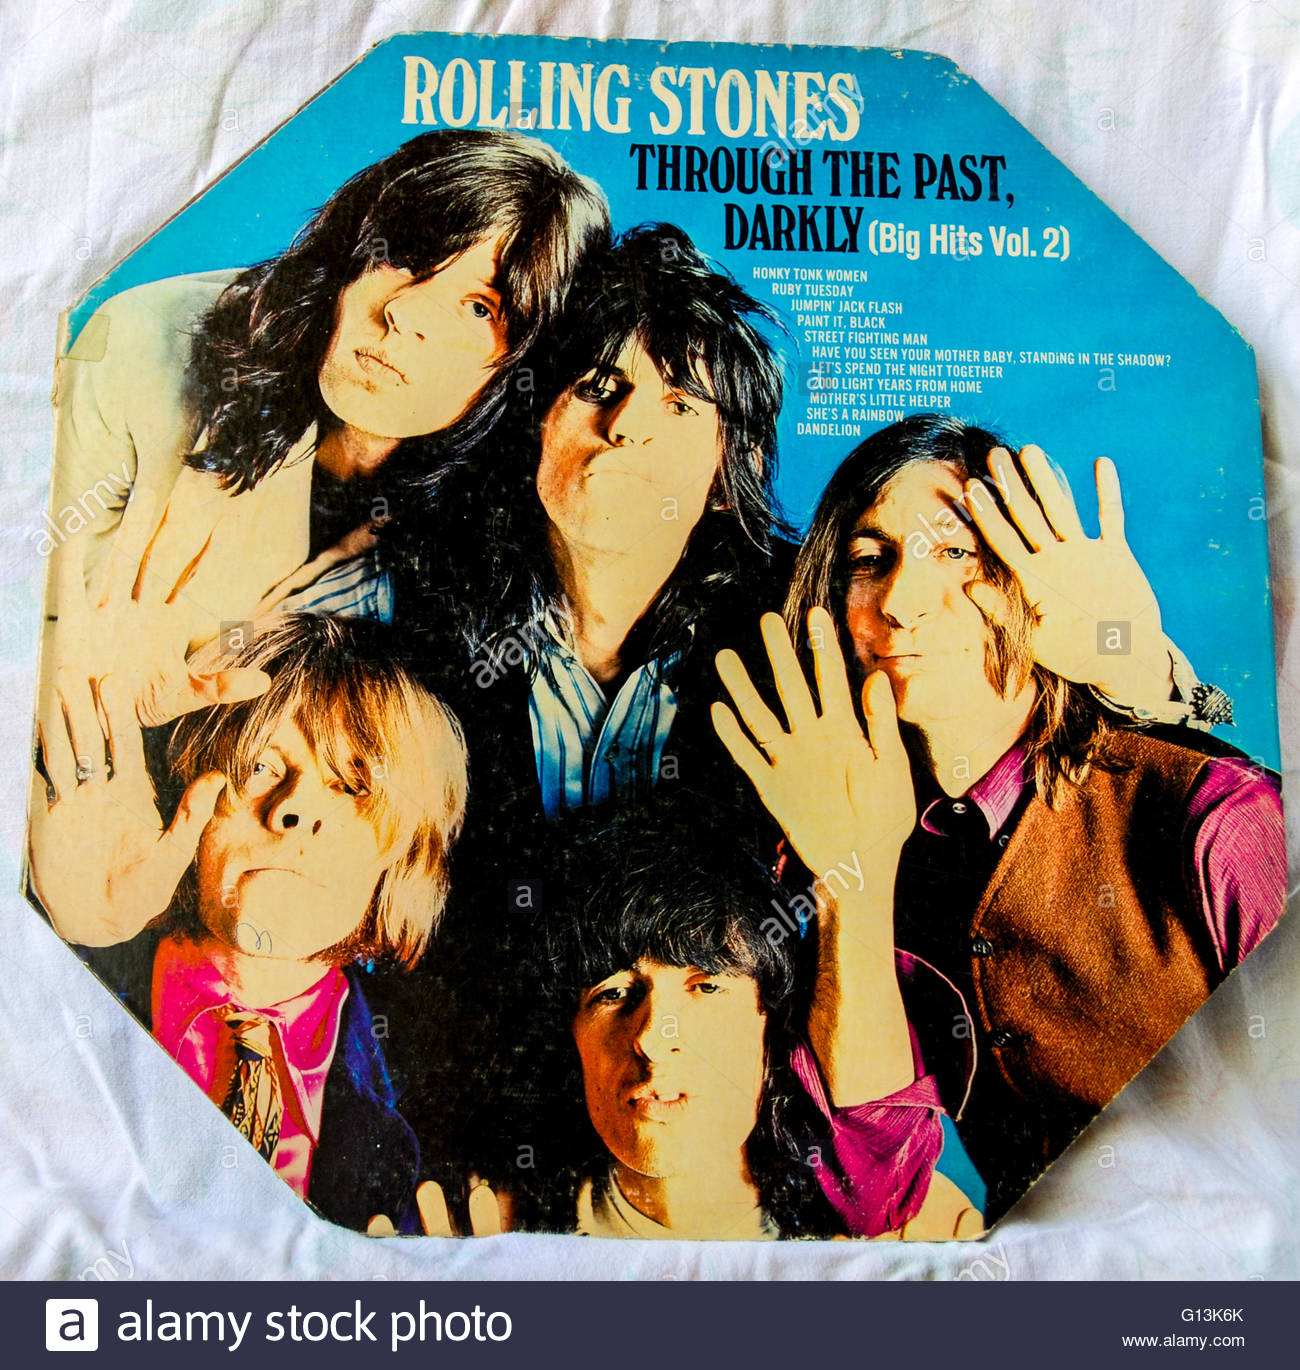 download album rolling stones rar